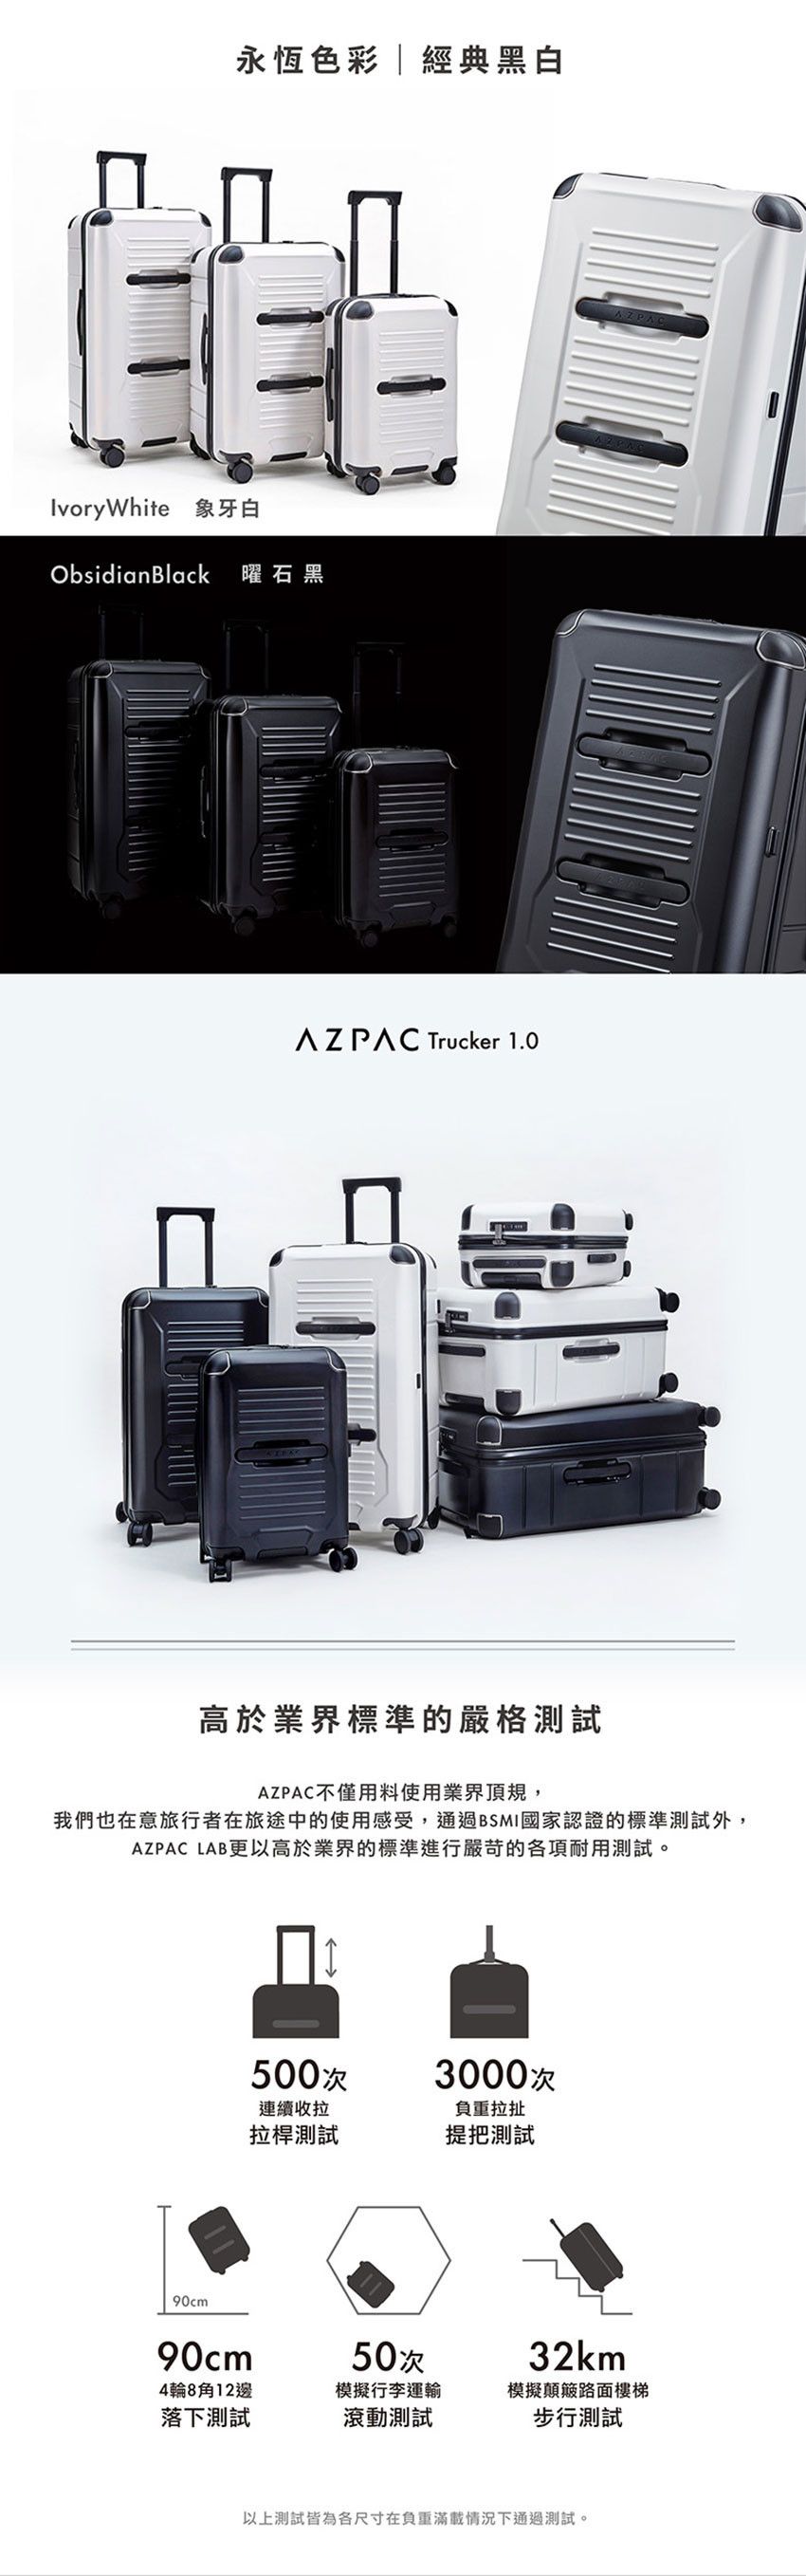 azpac-basic-20-06.jpg